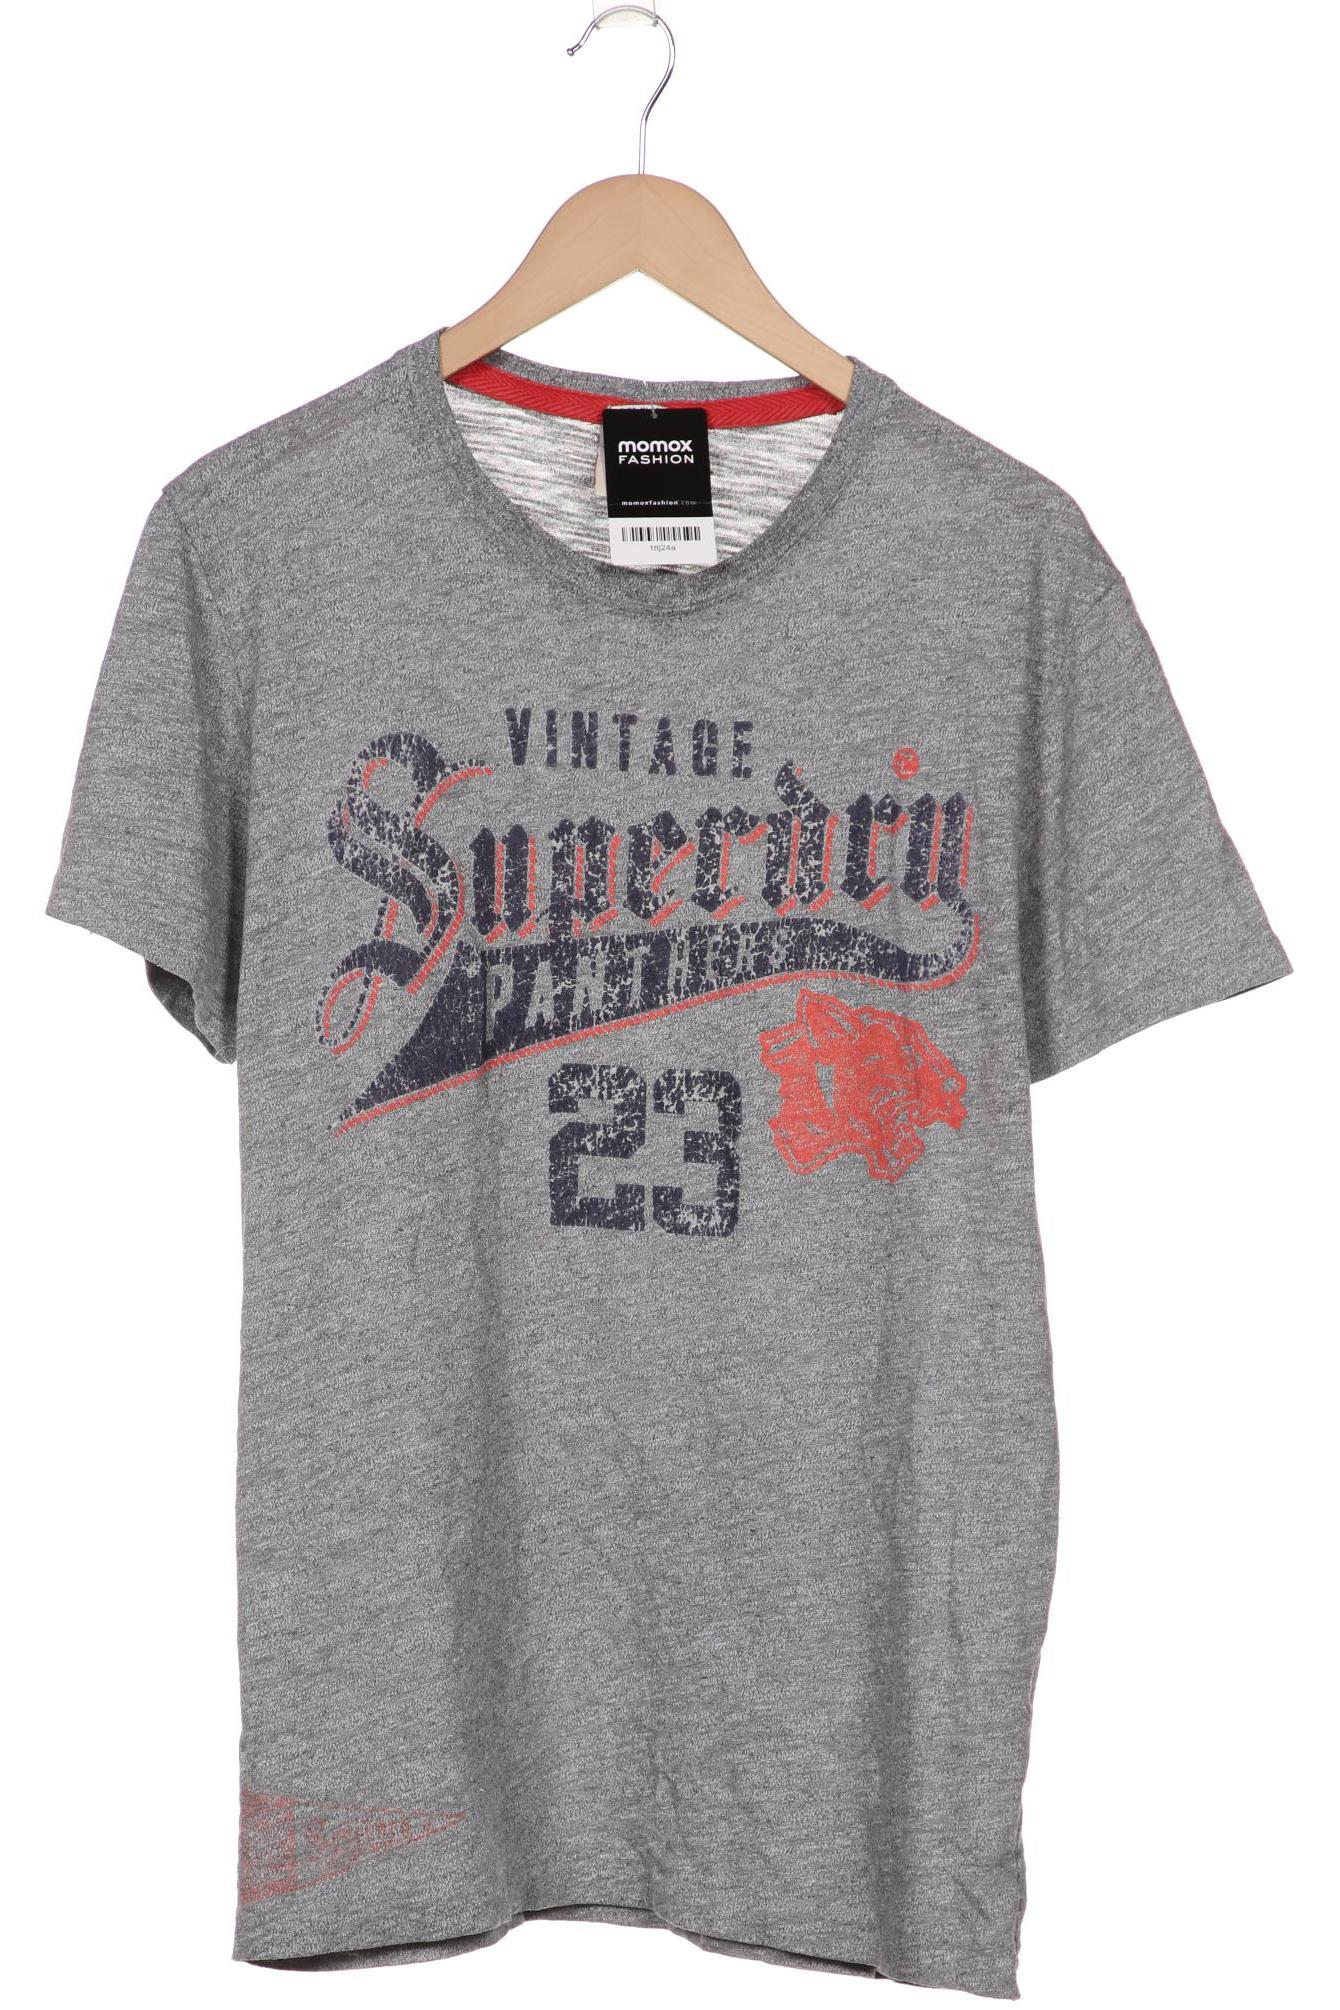 Superdry Herren T-Shirt, grau, Gr. 54 von Superdry